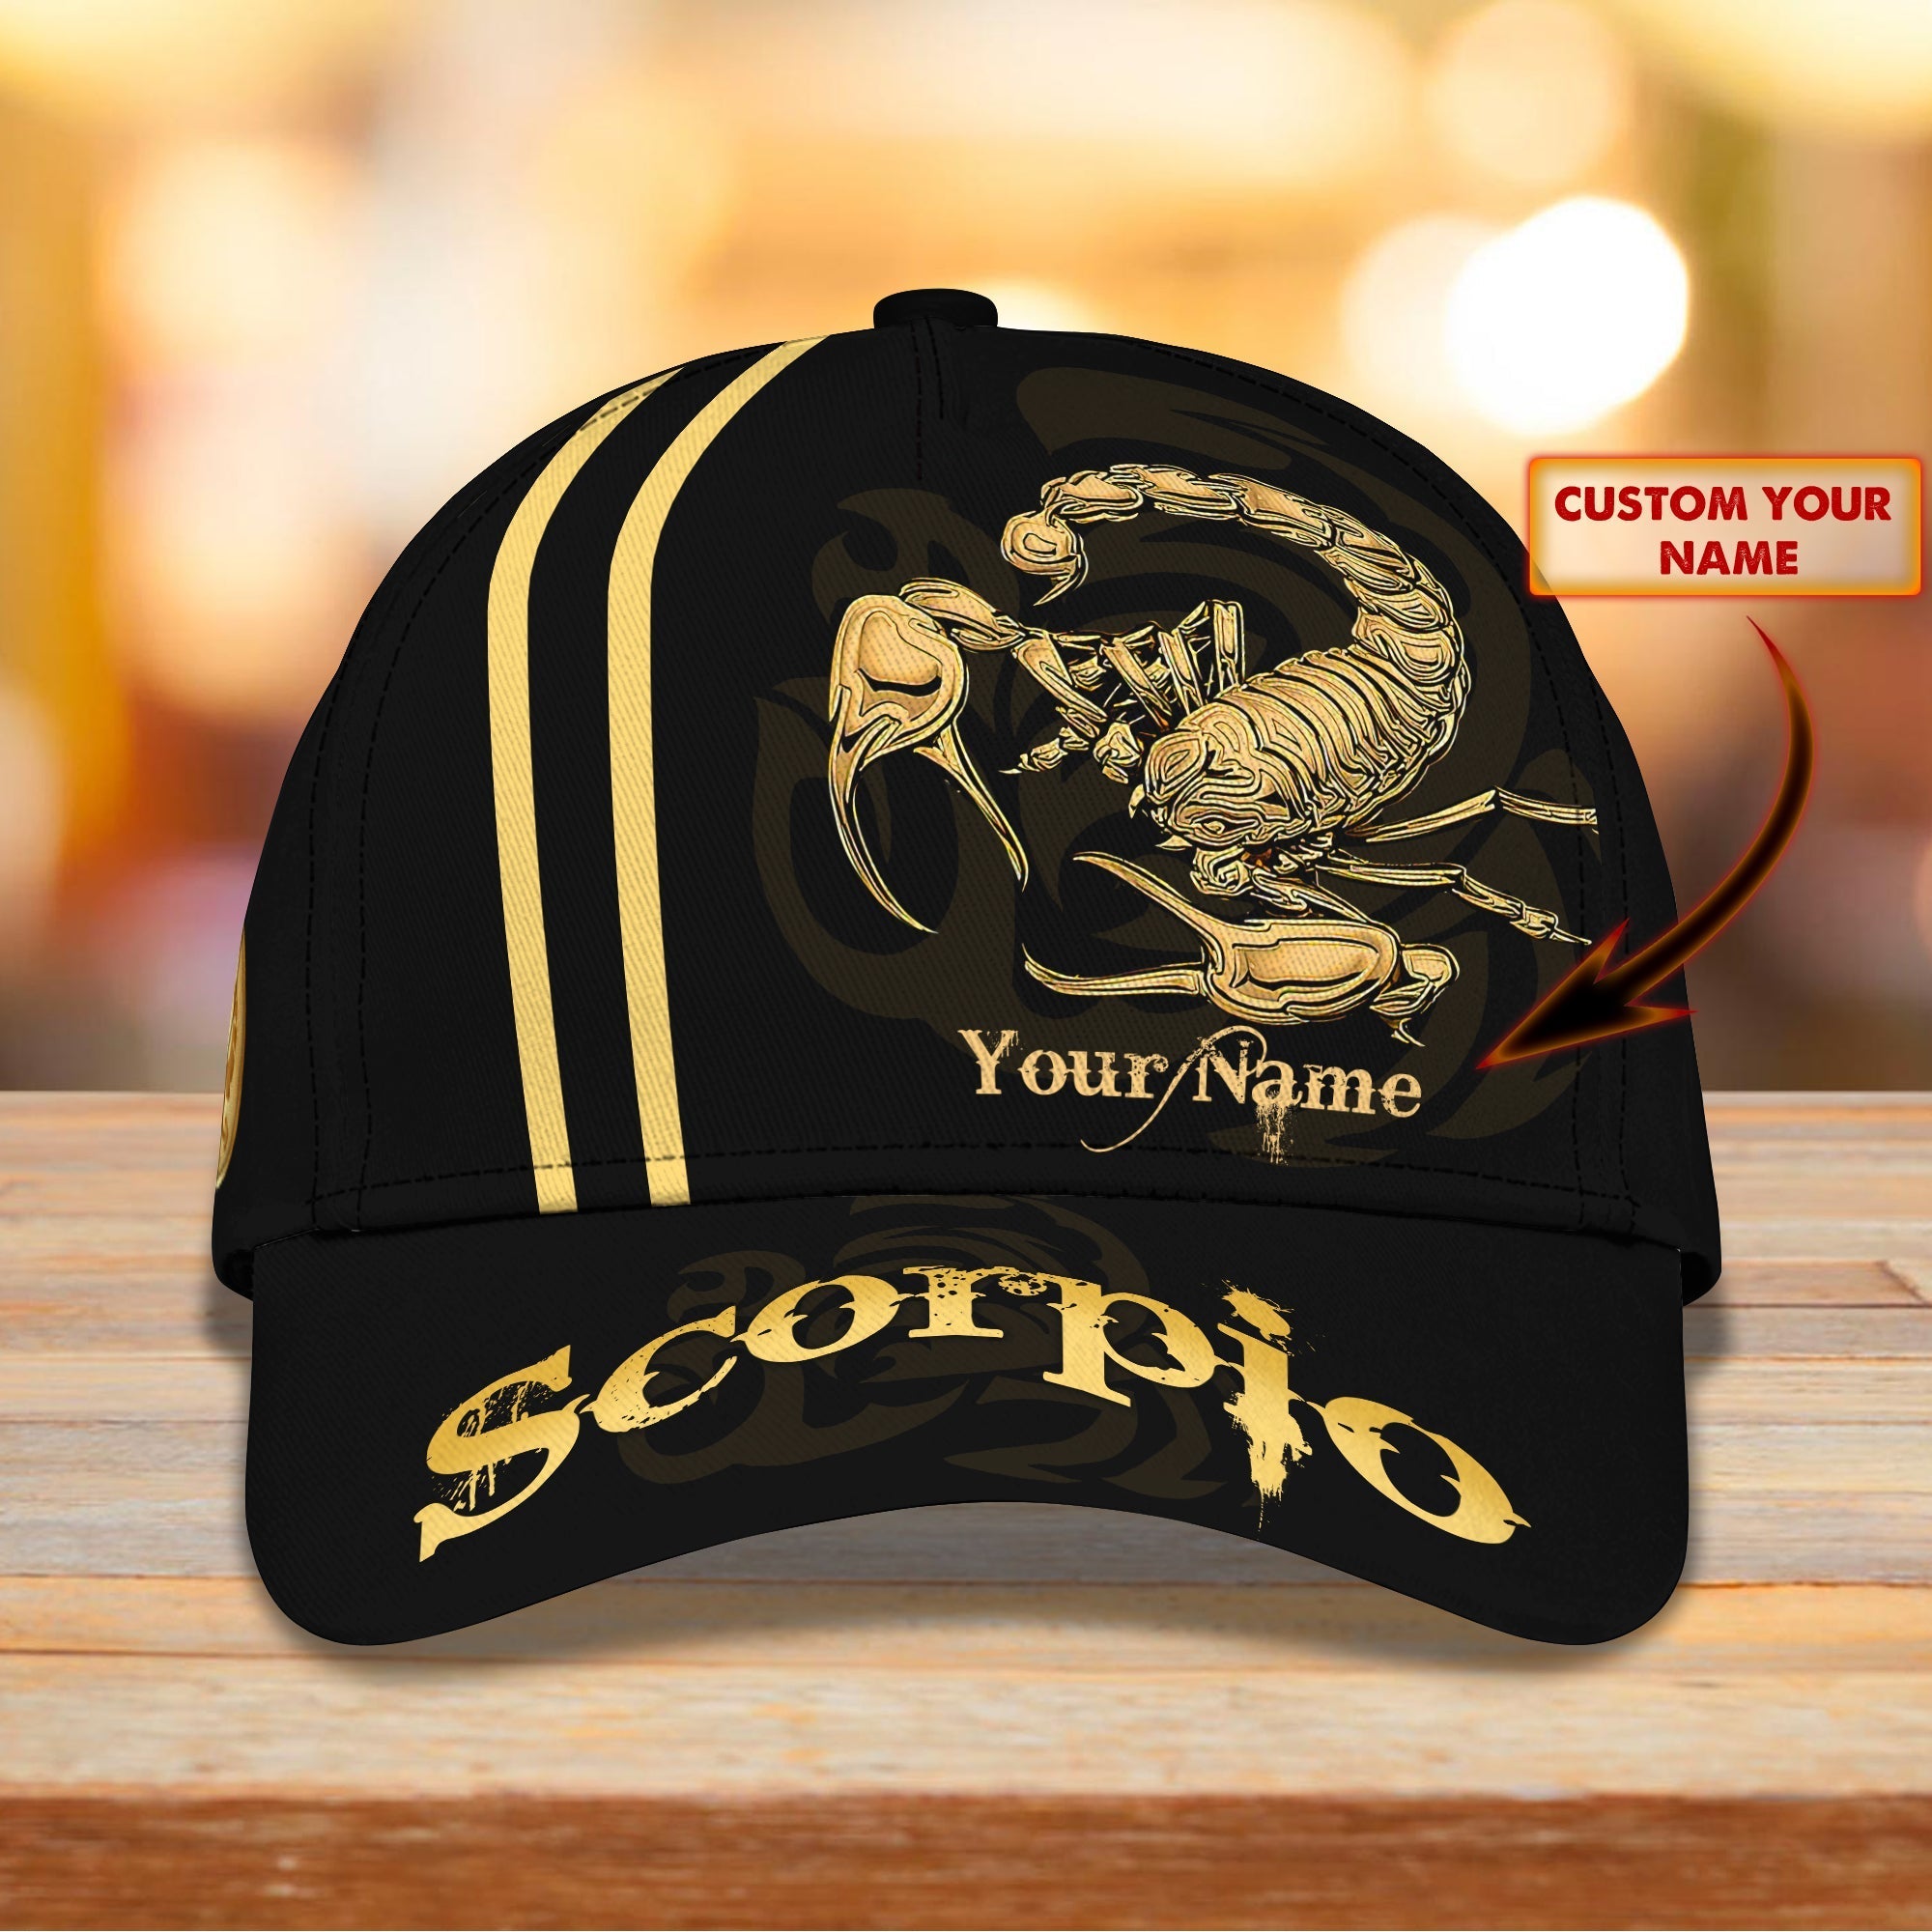 Customized Scorpio Baseball Cap Hat/ 3D Full Printed Scorpio Hat/ Scorpio Cap